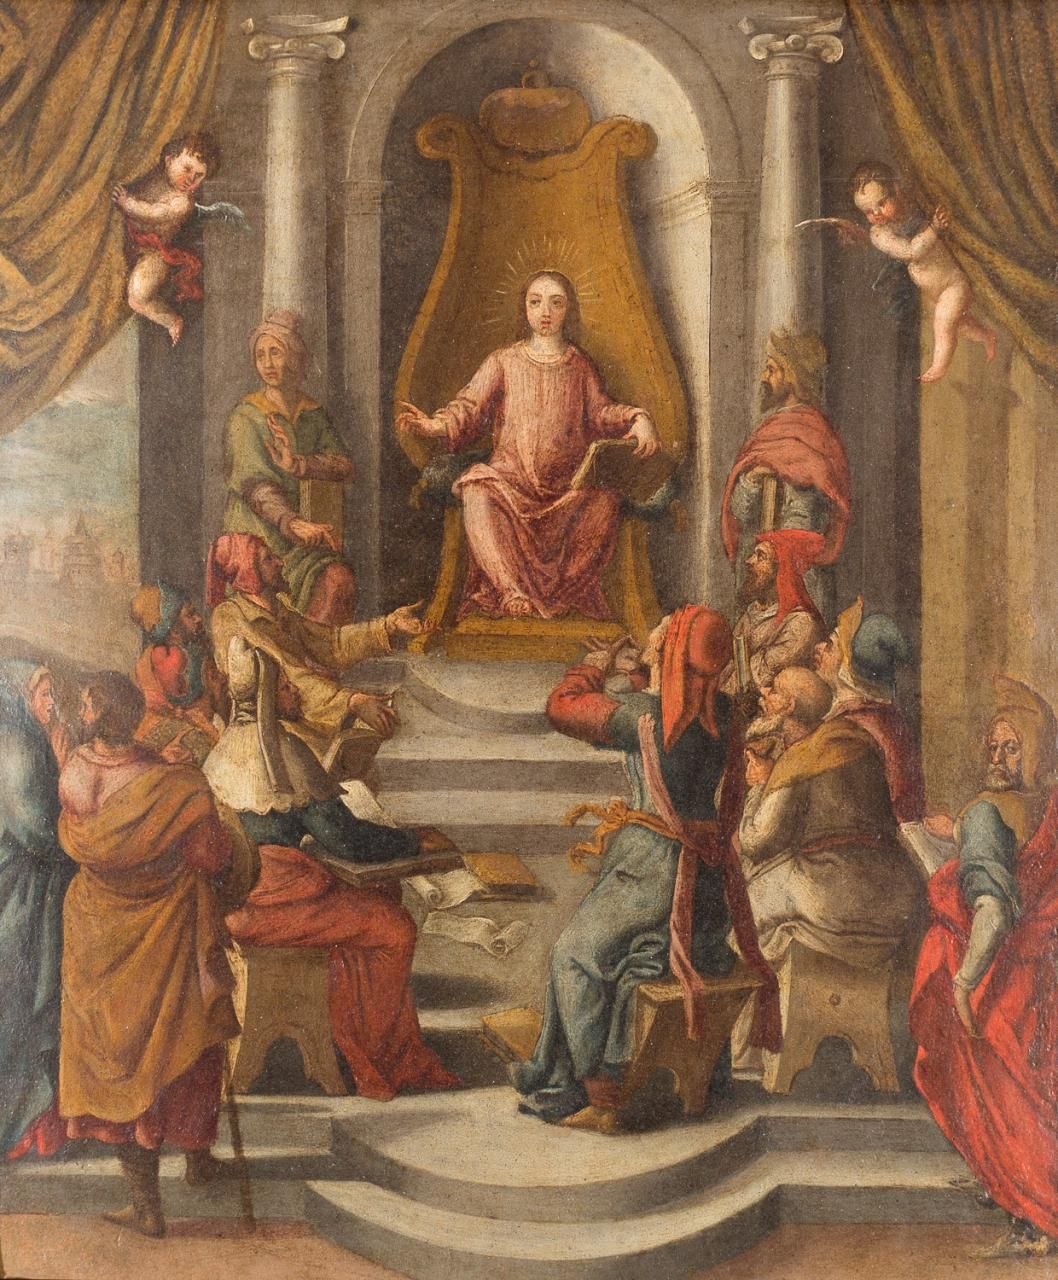 ESCUELA FLAMENCA, S. XVII Jésus parmi les médecins
Huile sur cuivre
38 x 32 cm